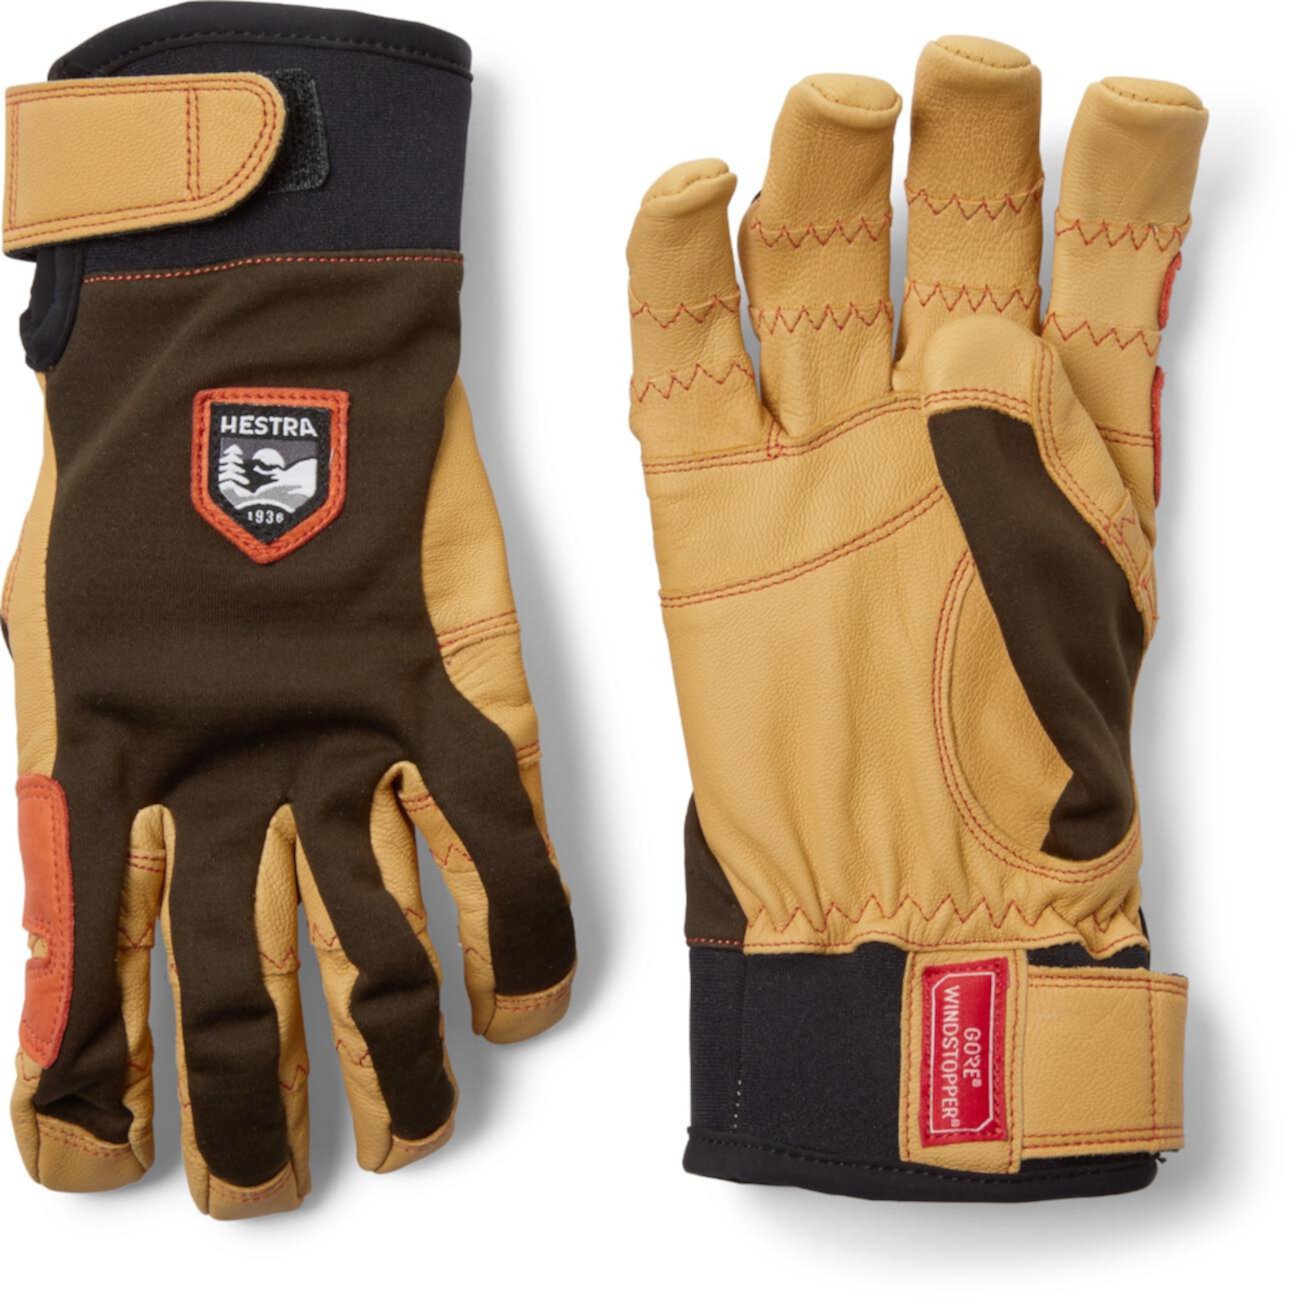 Активные перчатки Ergo Grip Hestra Gloves